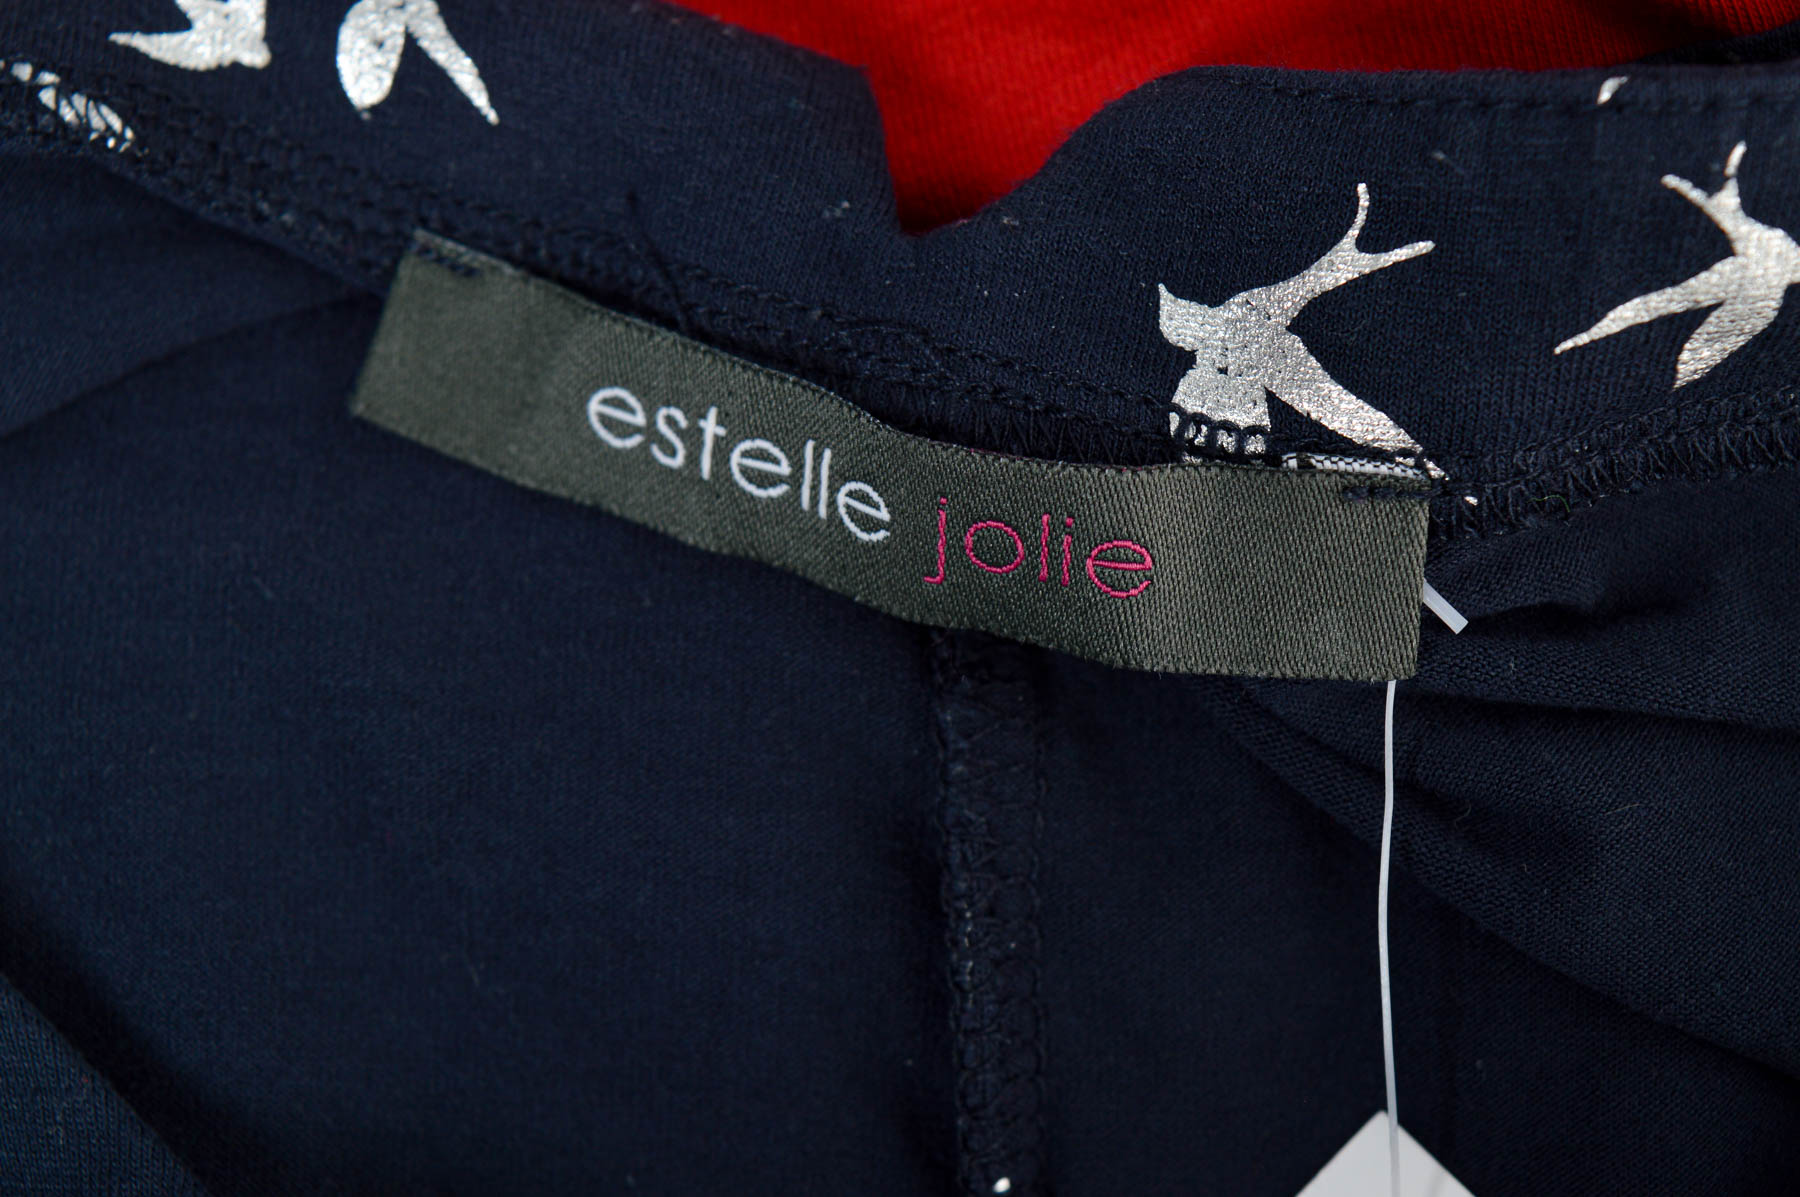 Bluza de damă - Estelle jolie - 2